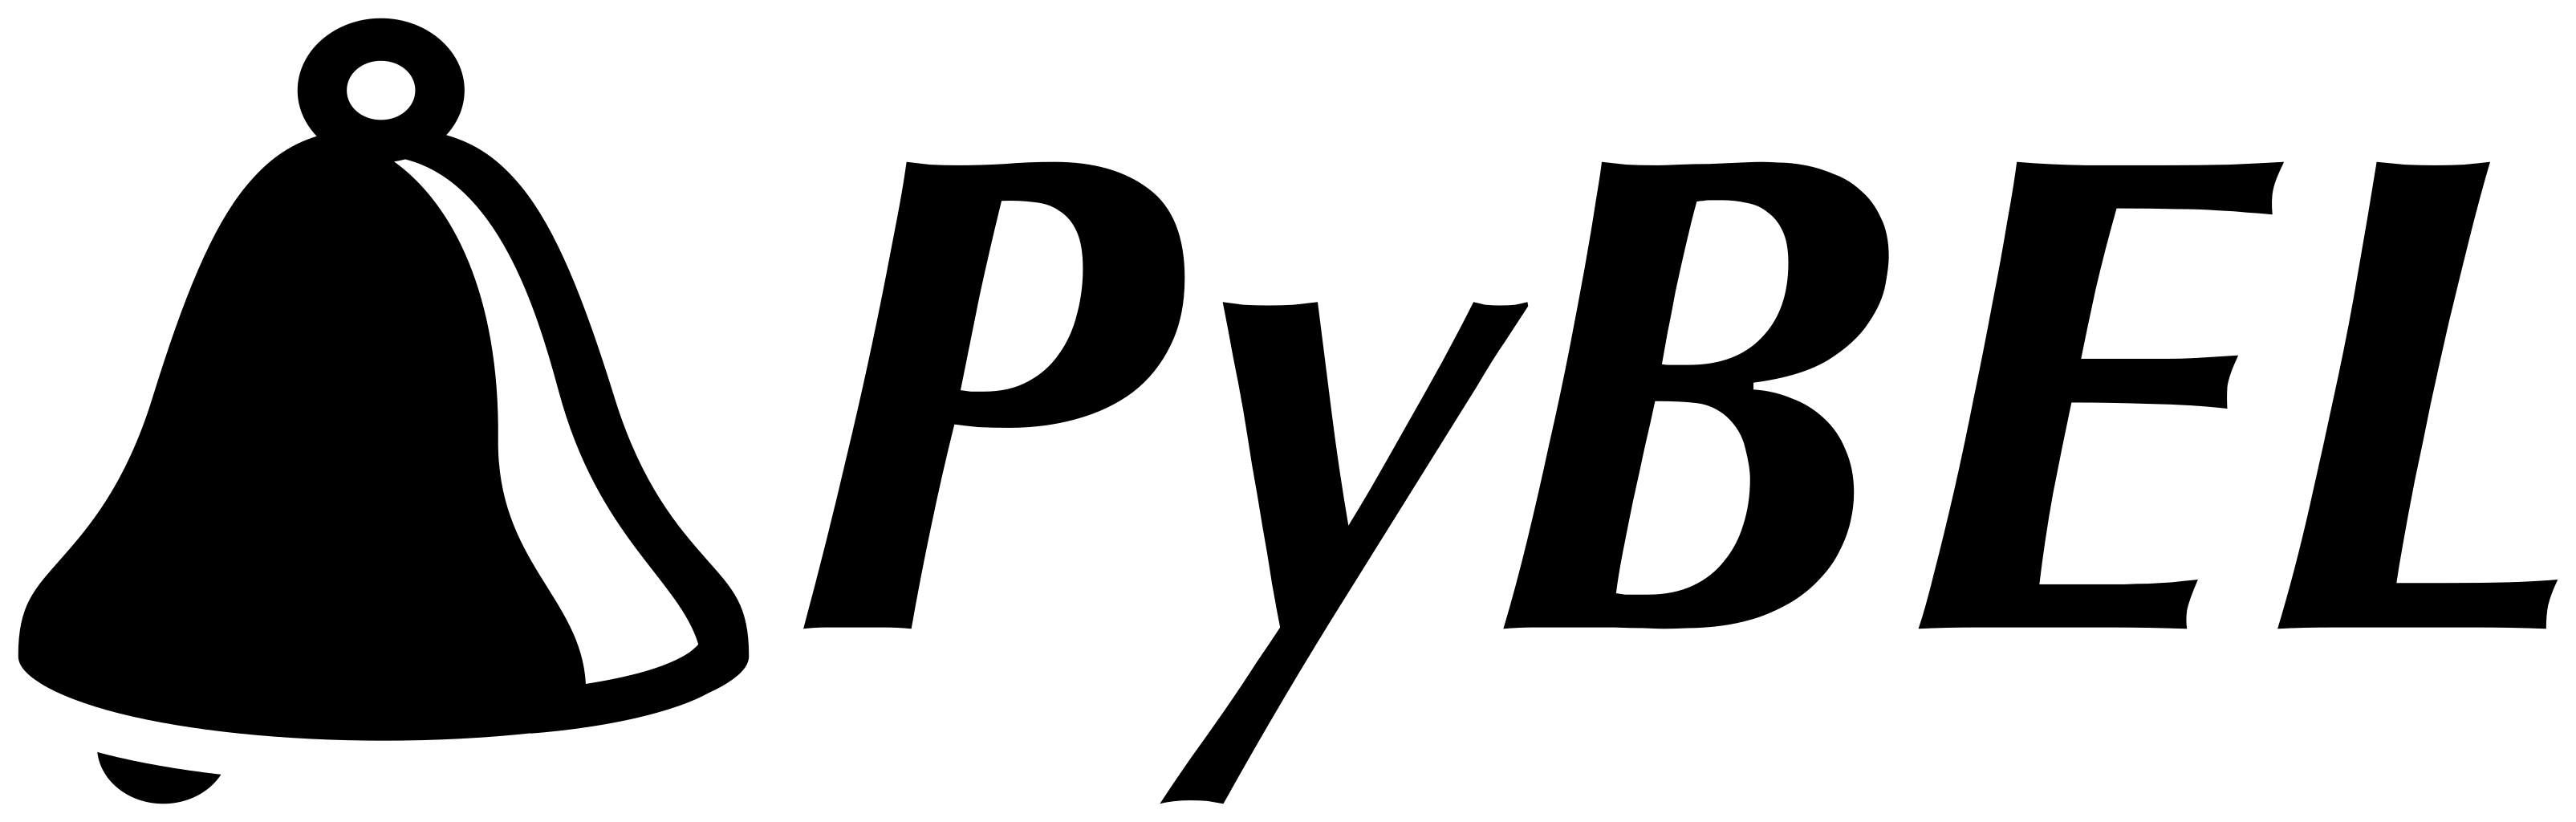 PyBEL Logotype